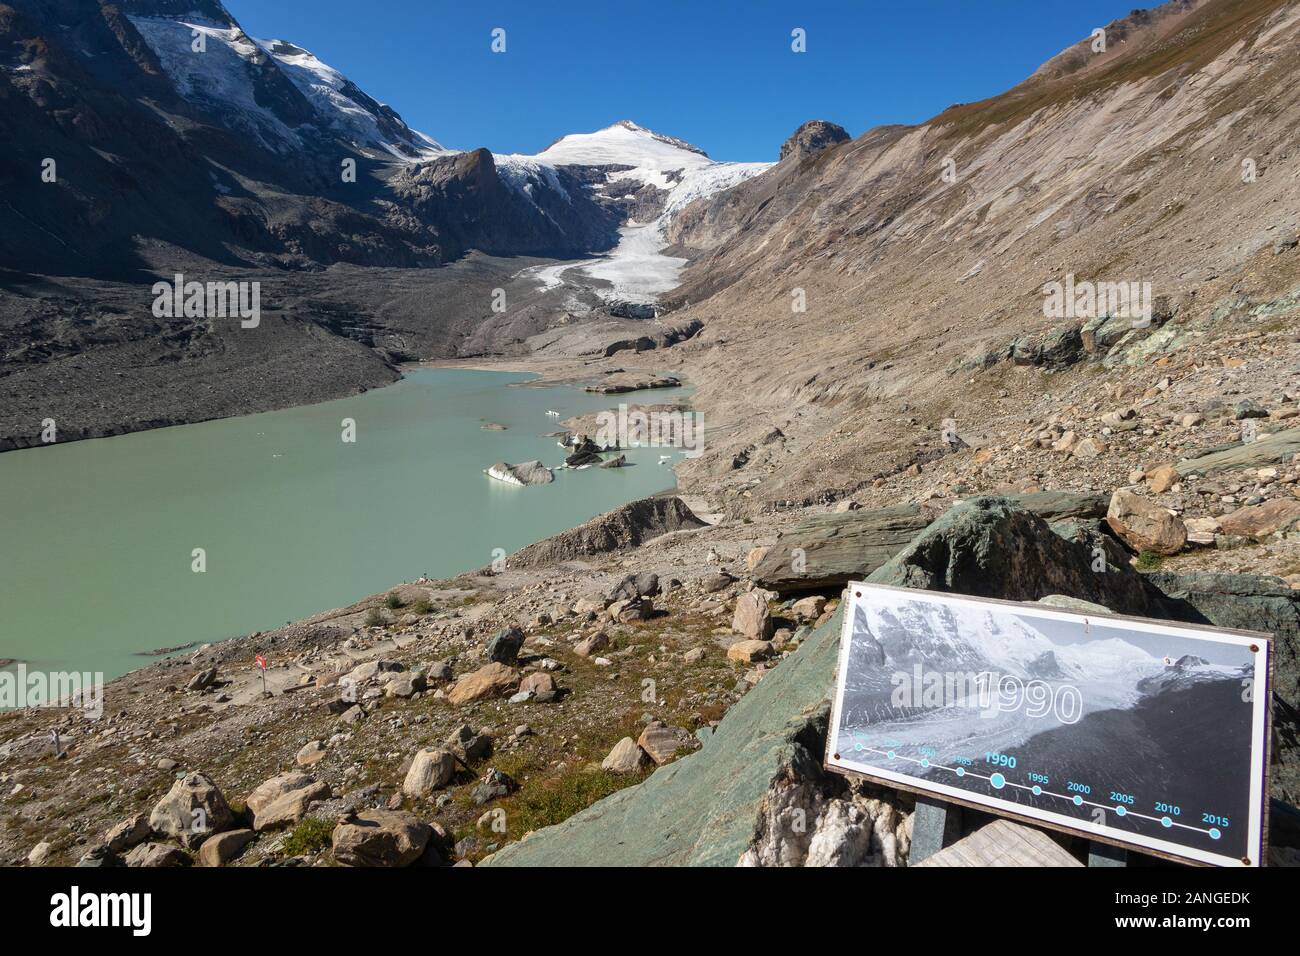 Glocknergruppe massiccio alpino. Il ghiacciaio Pasterze. Proglacial lake. Le schede di informazioni di livello glaciale confronto. Alpi austriache. L'Europa. Foto Stock